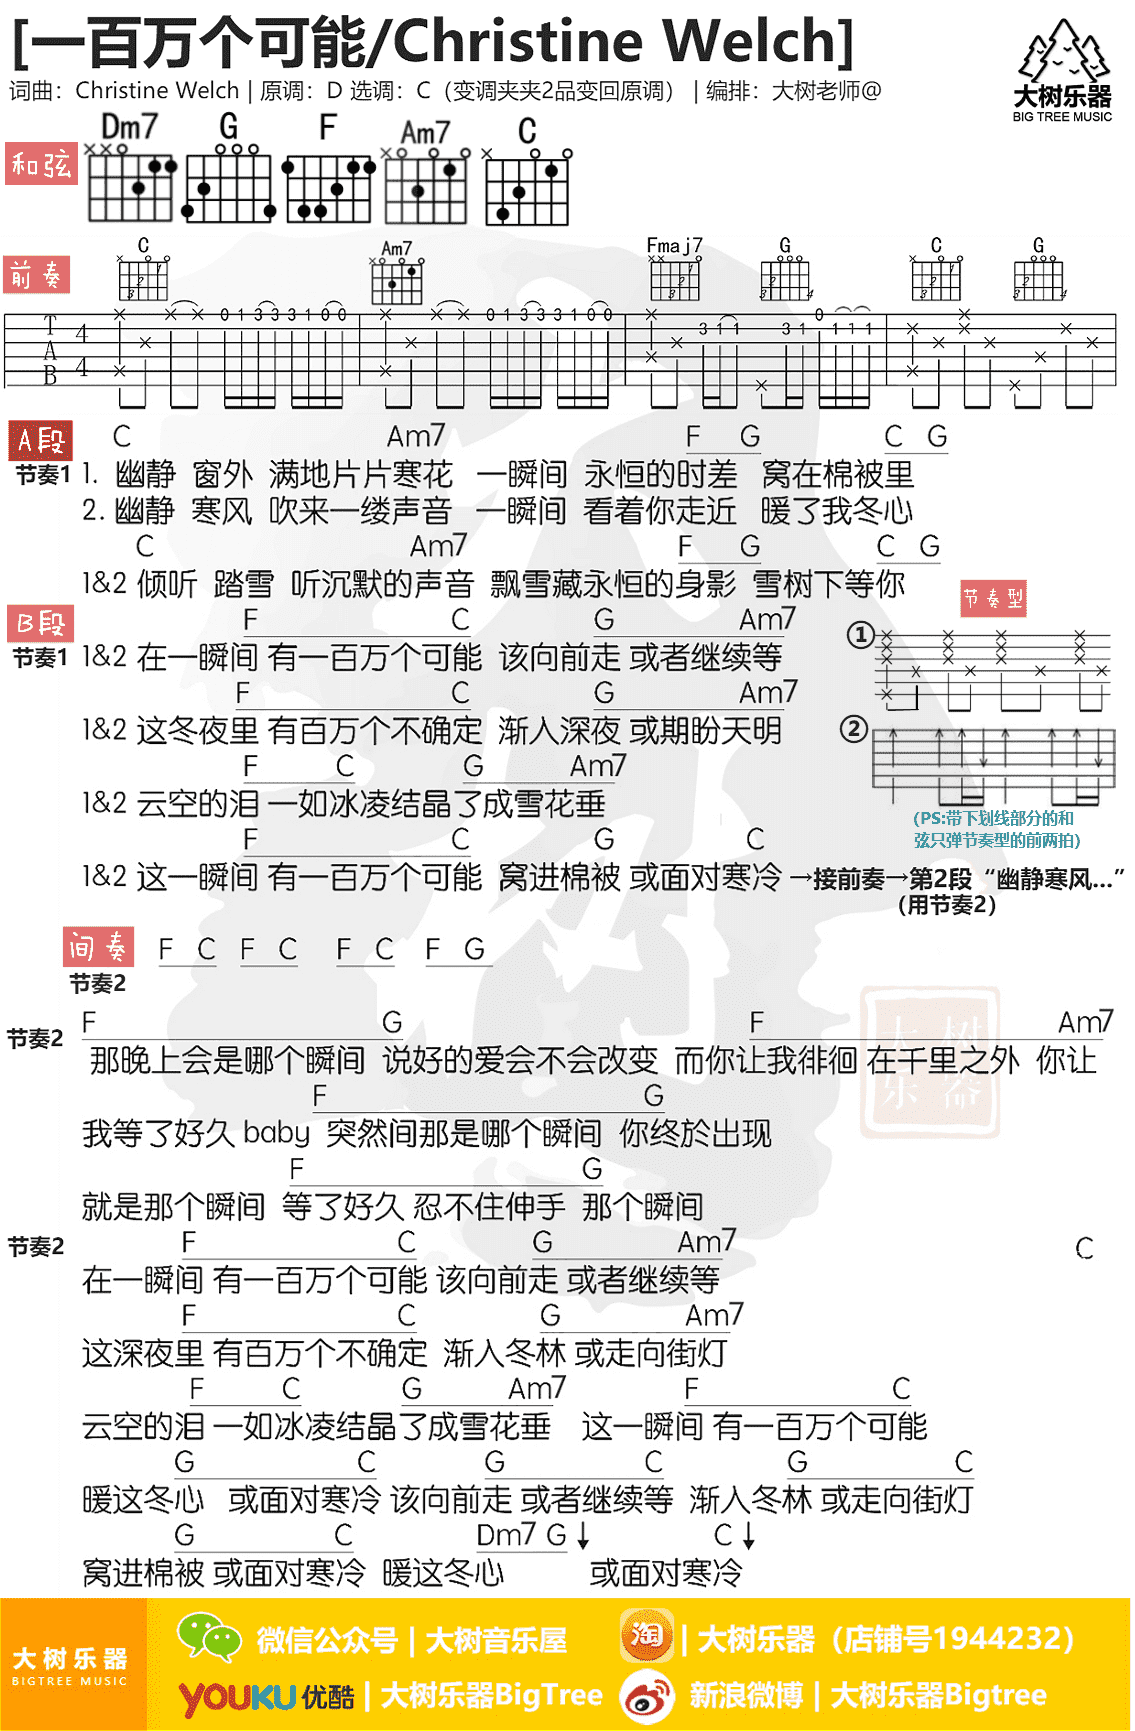 张芸京 - 偏爱( 插曲-大树音乐屋) [弹唱 教学] 吉他谱